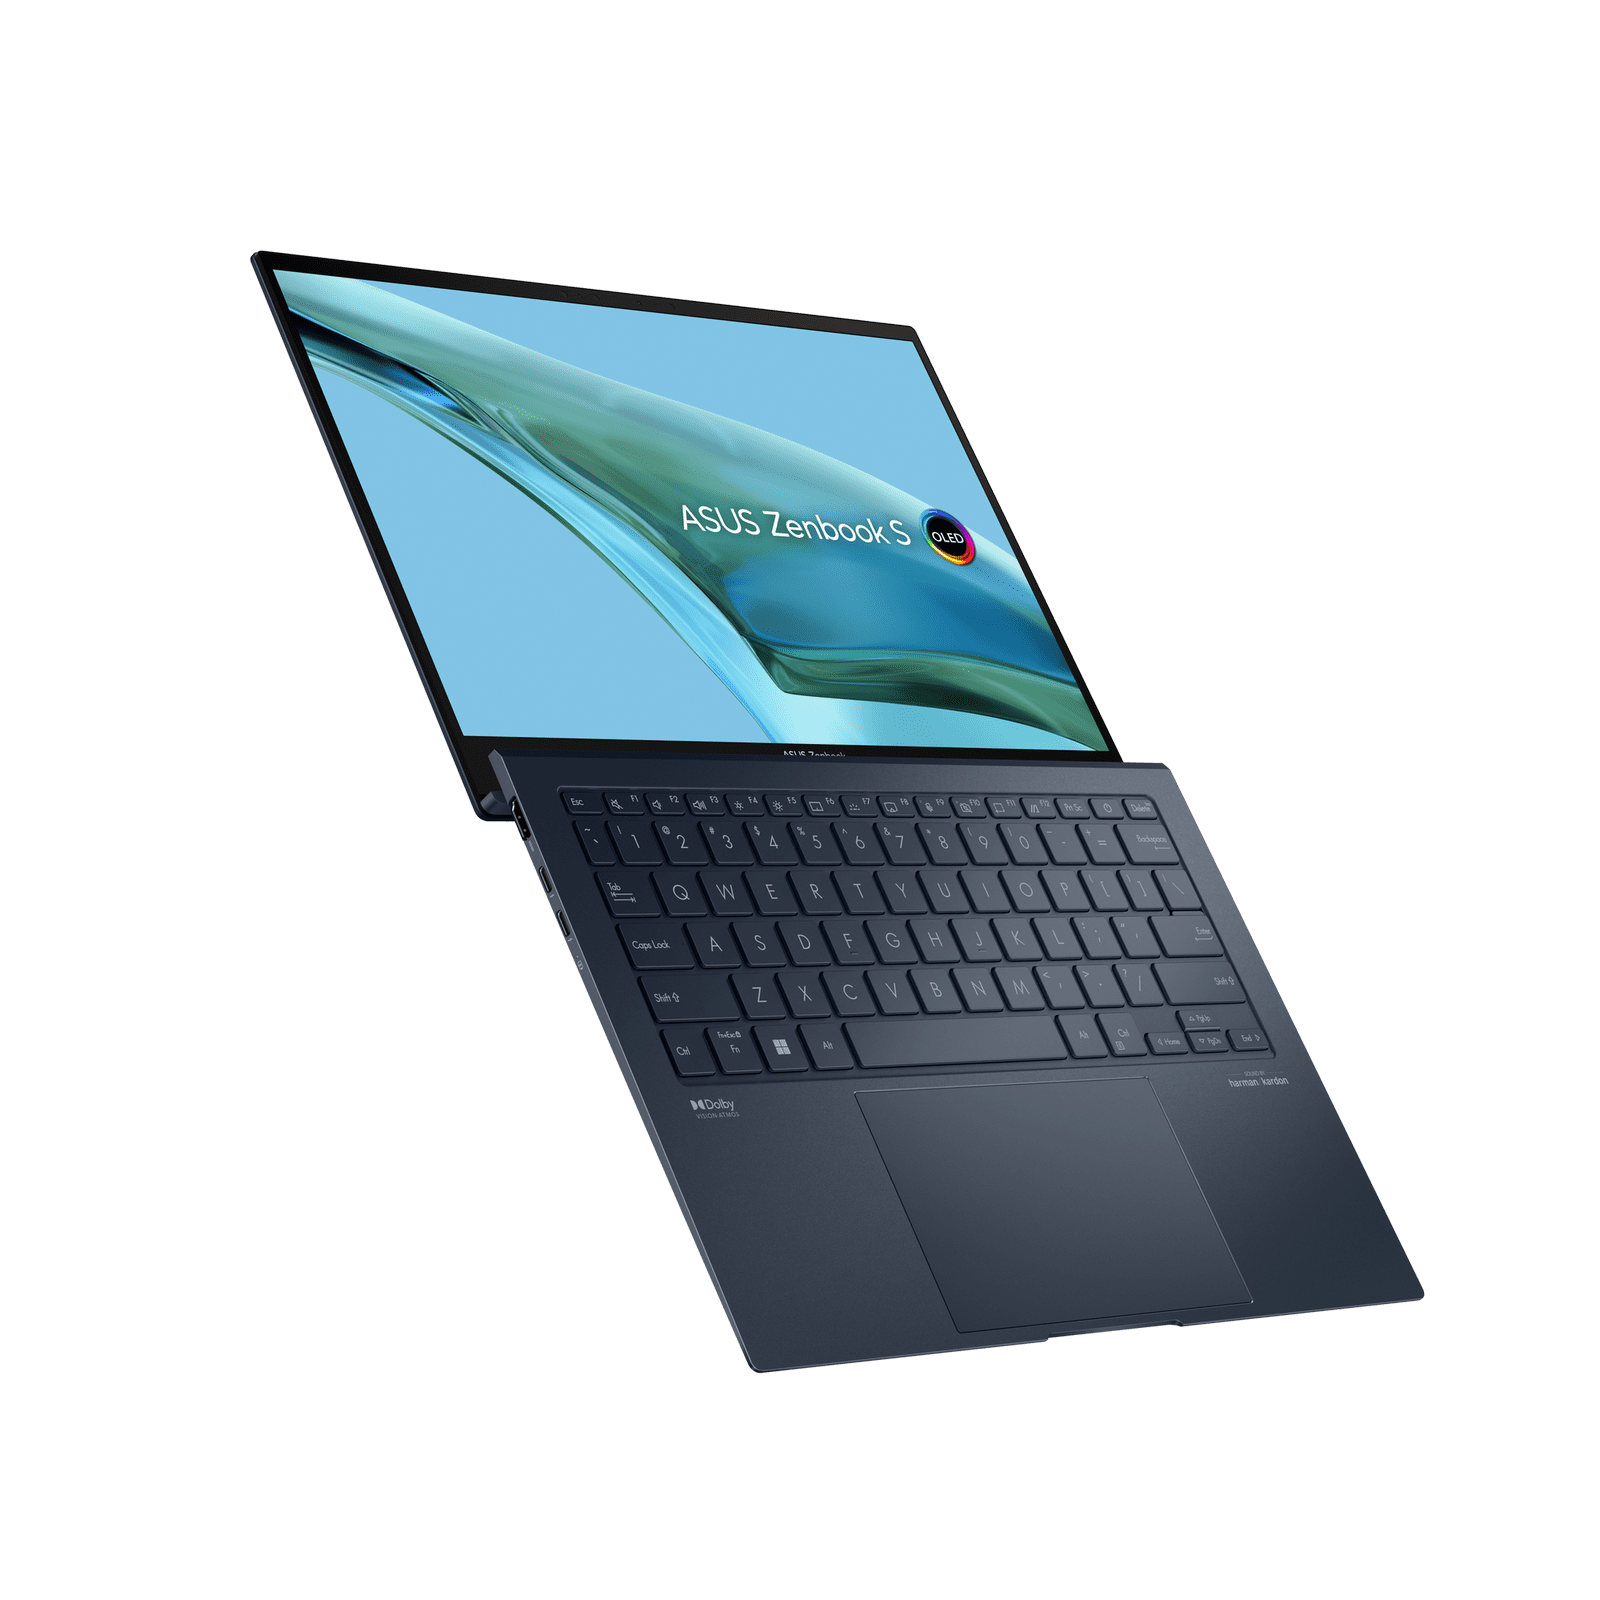 ASUS представляет Zenbook S 13 OLED – самый тонкий в мире ноутбук с 13,3-дюймовым OLED-дисплеем